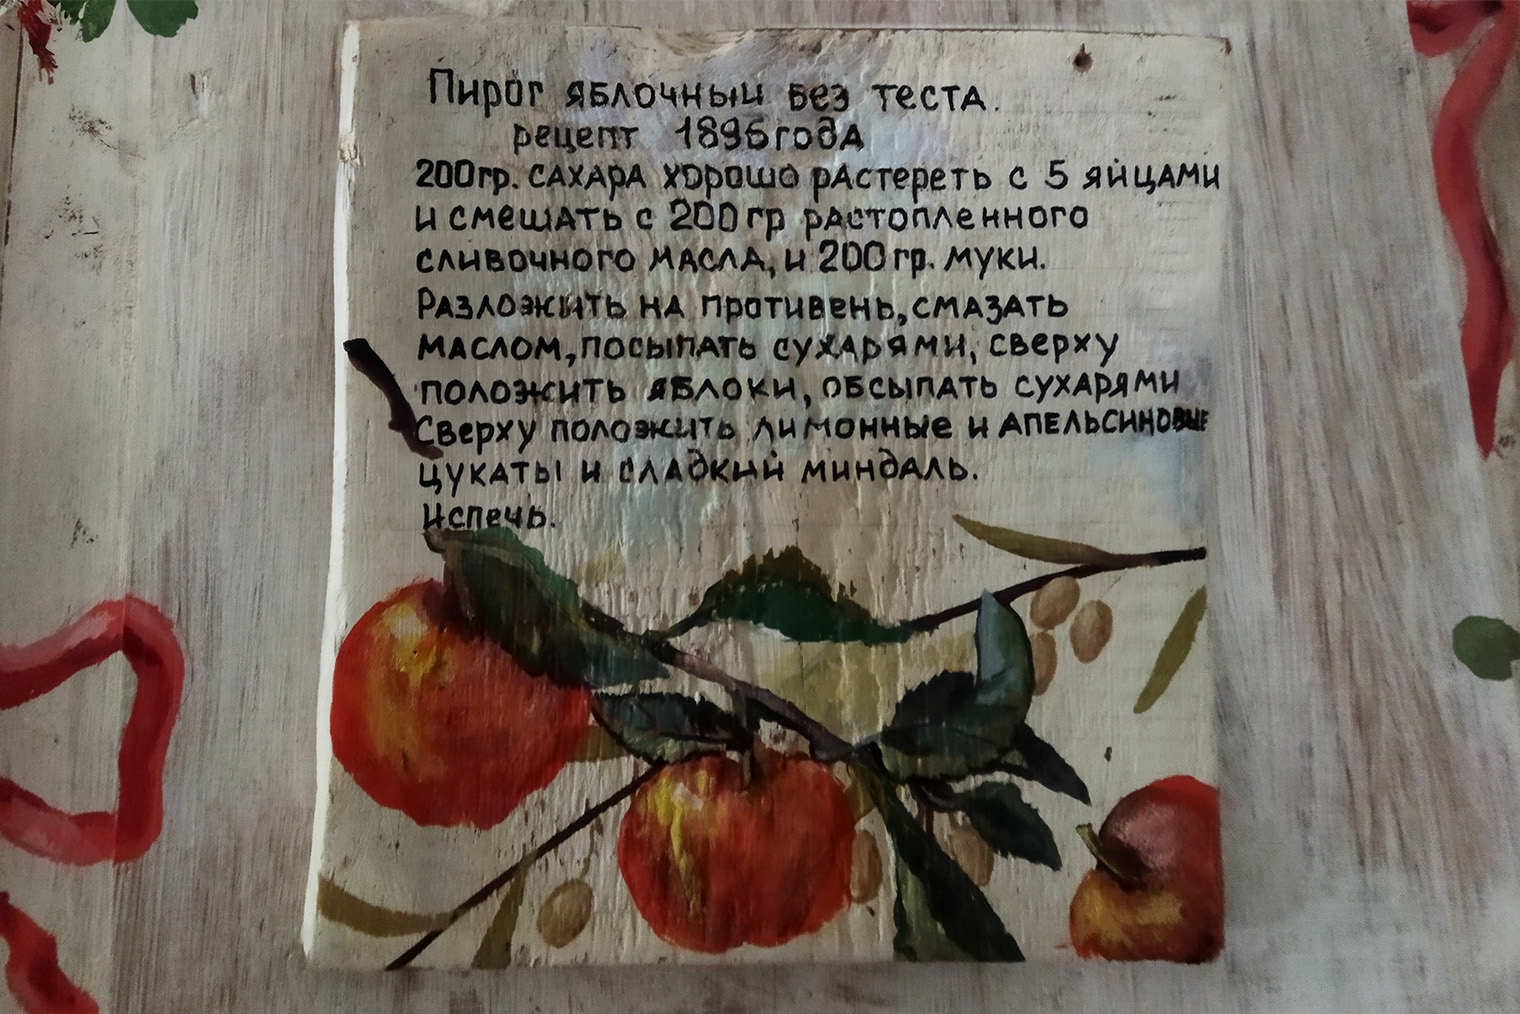 Рецепт яблочного пирога 1896 года. Можно попробовать приготовить